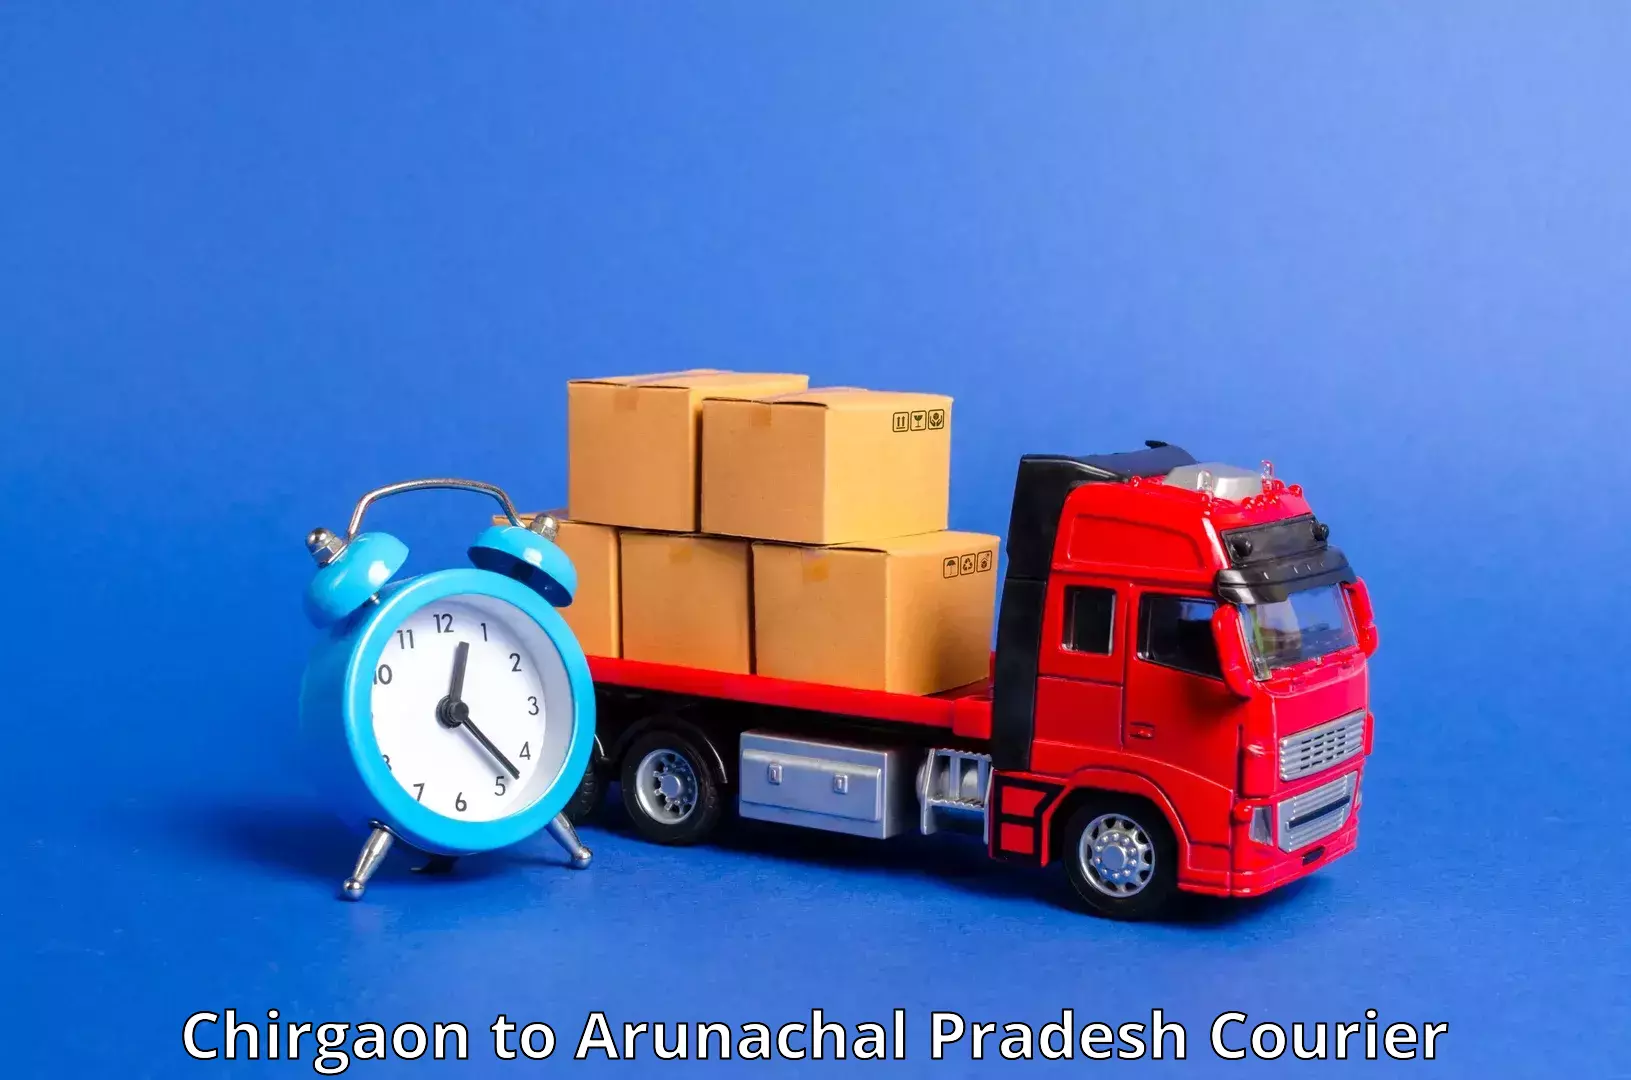 Next day courier Chirgaon to Arunachal Pradesh